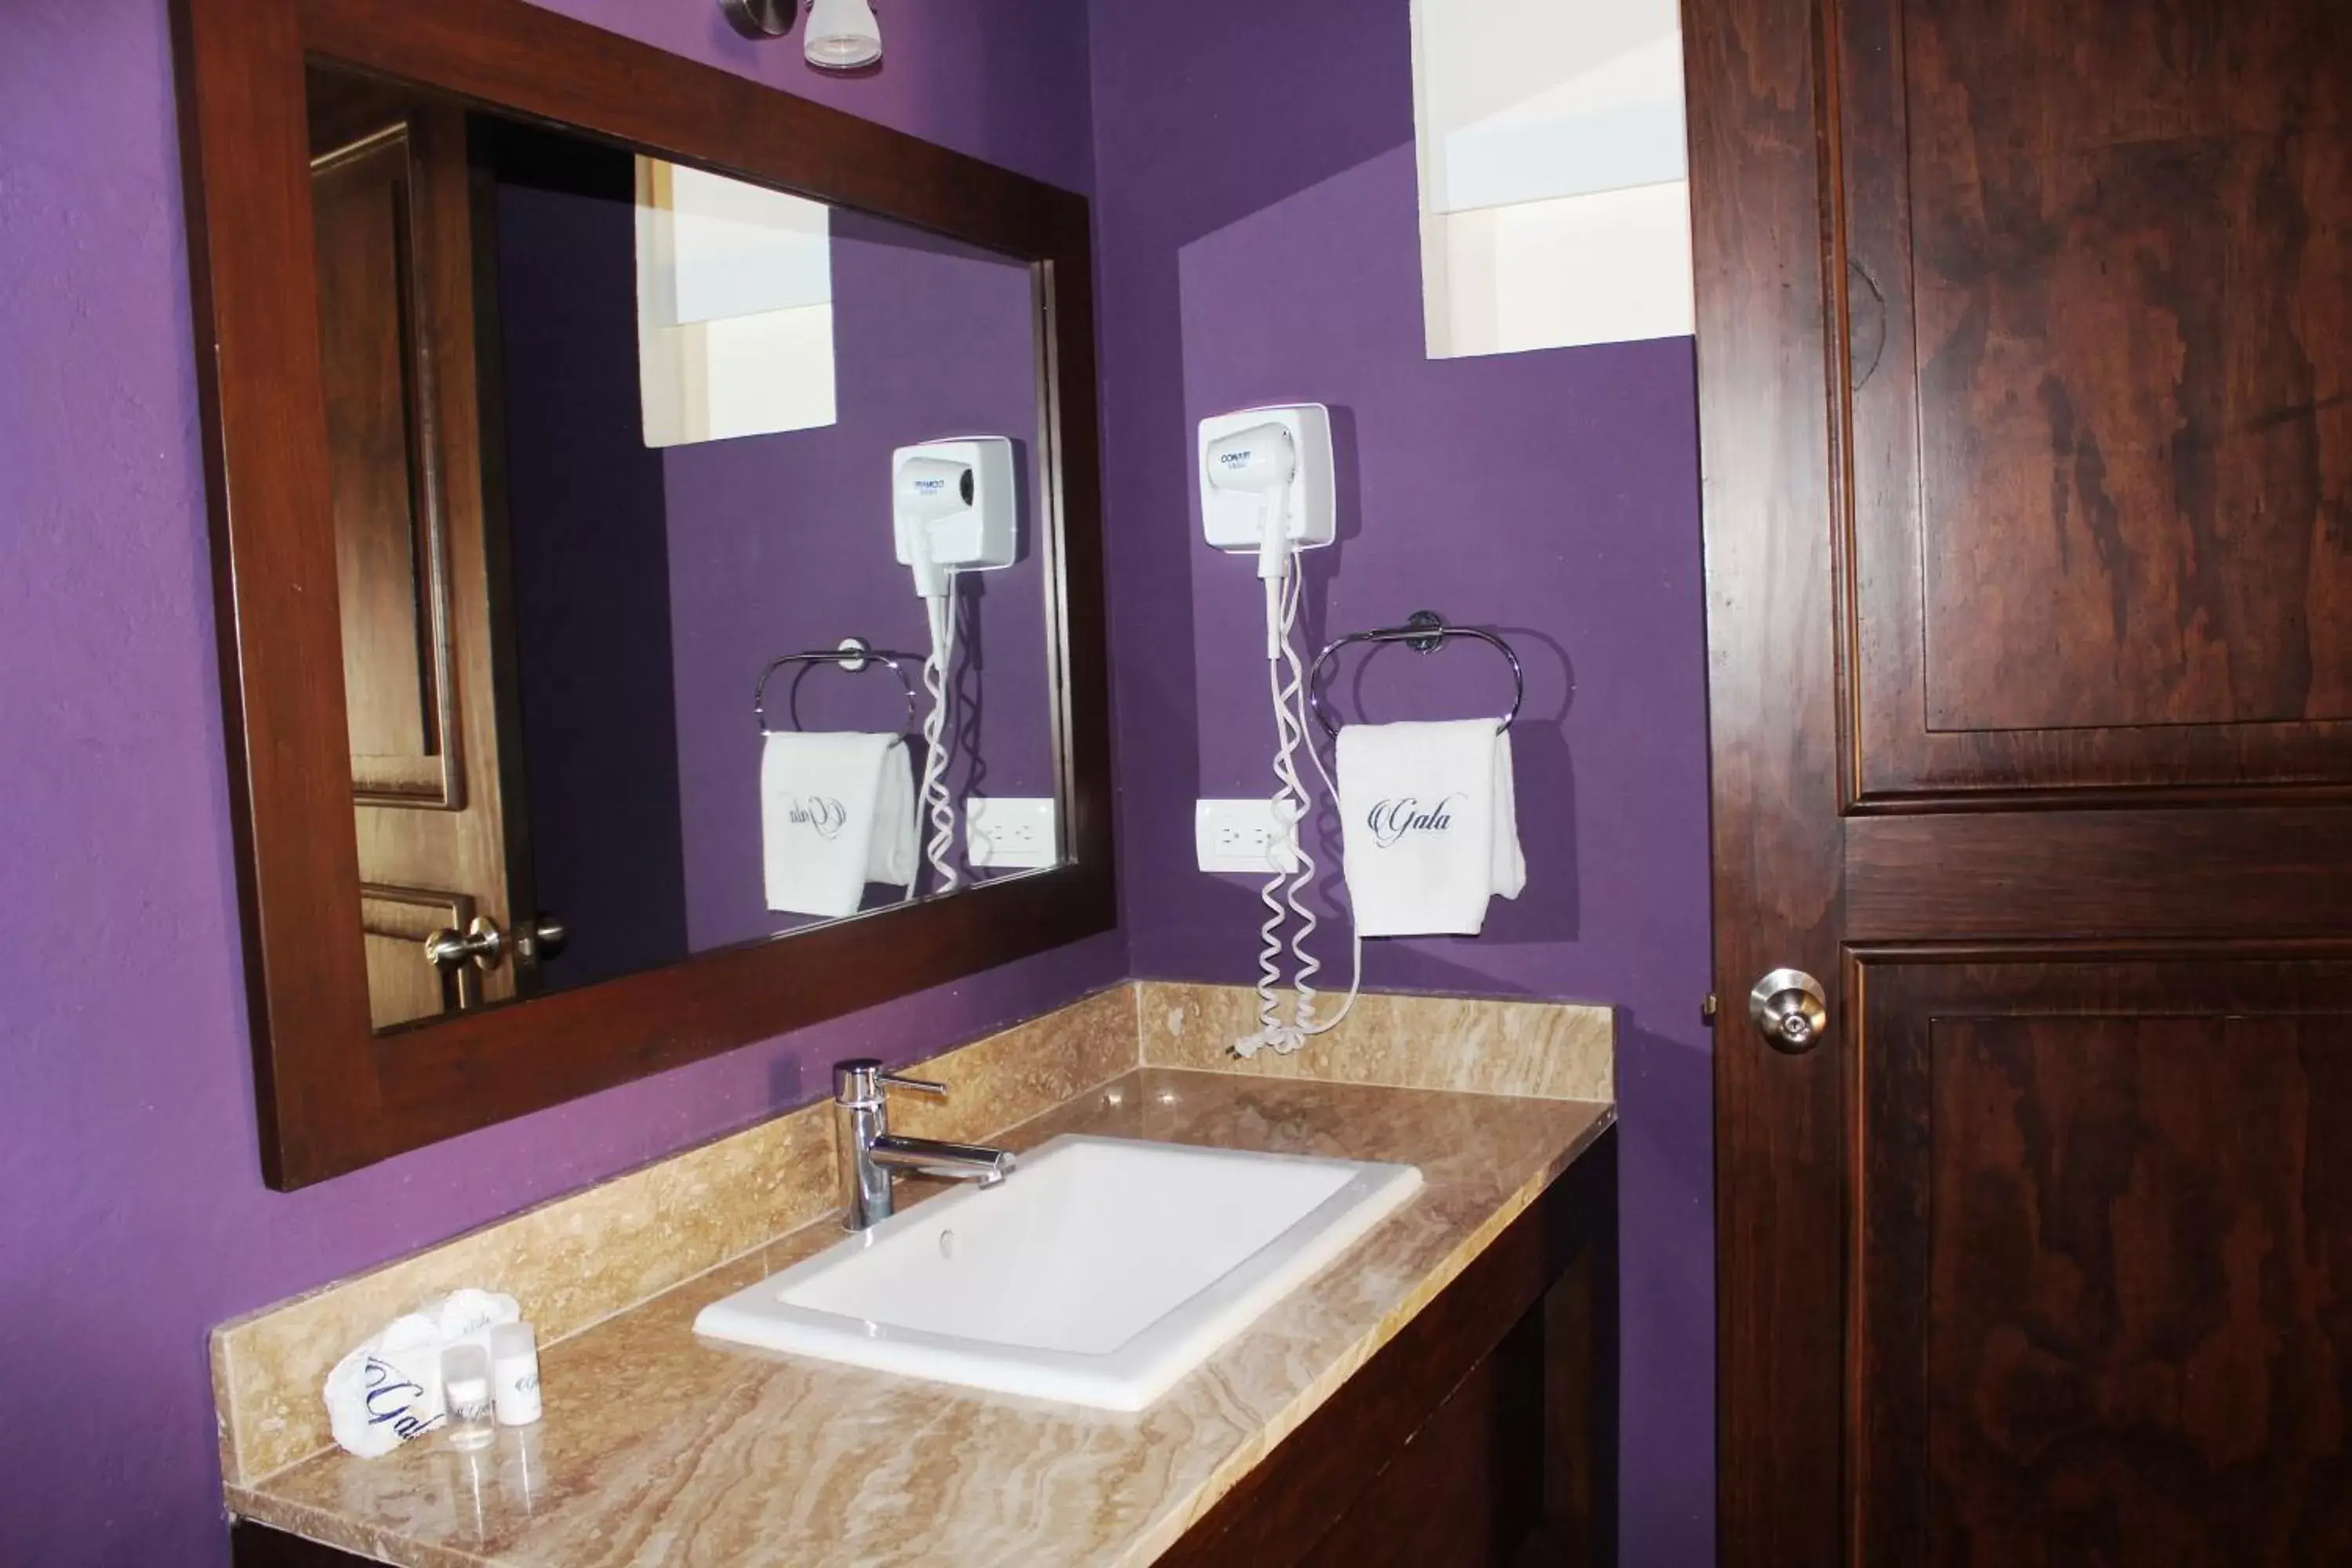 Decorative detail, Bathroom in Hotel Gala